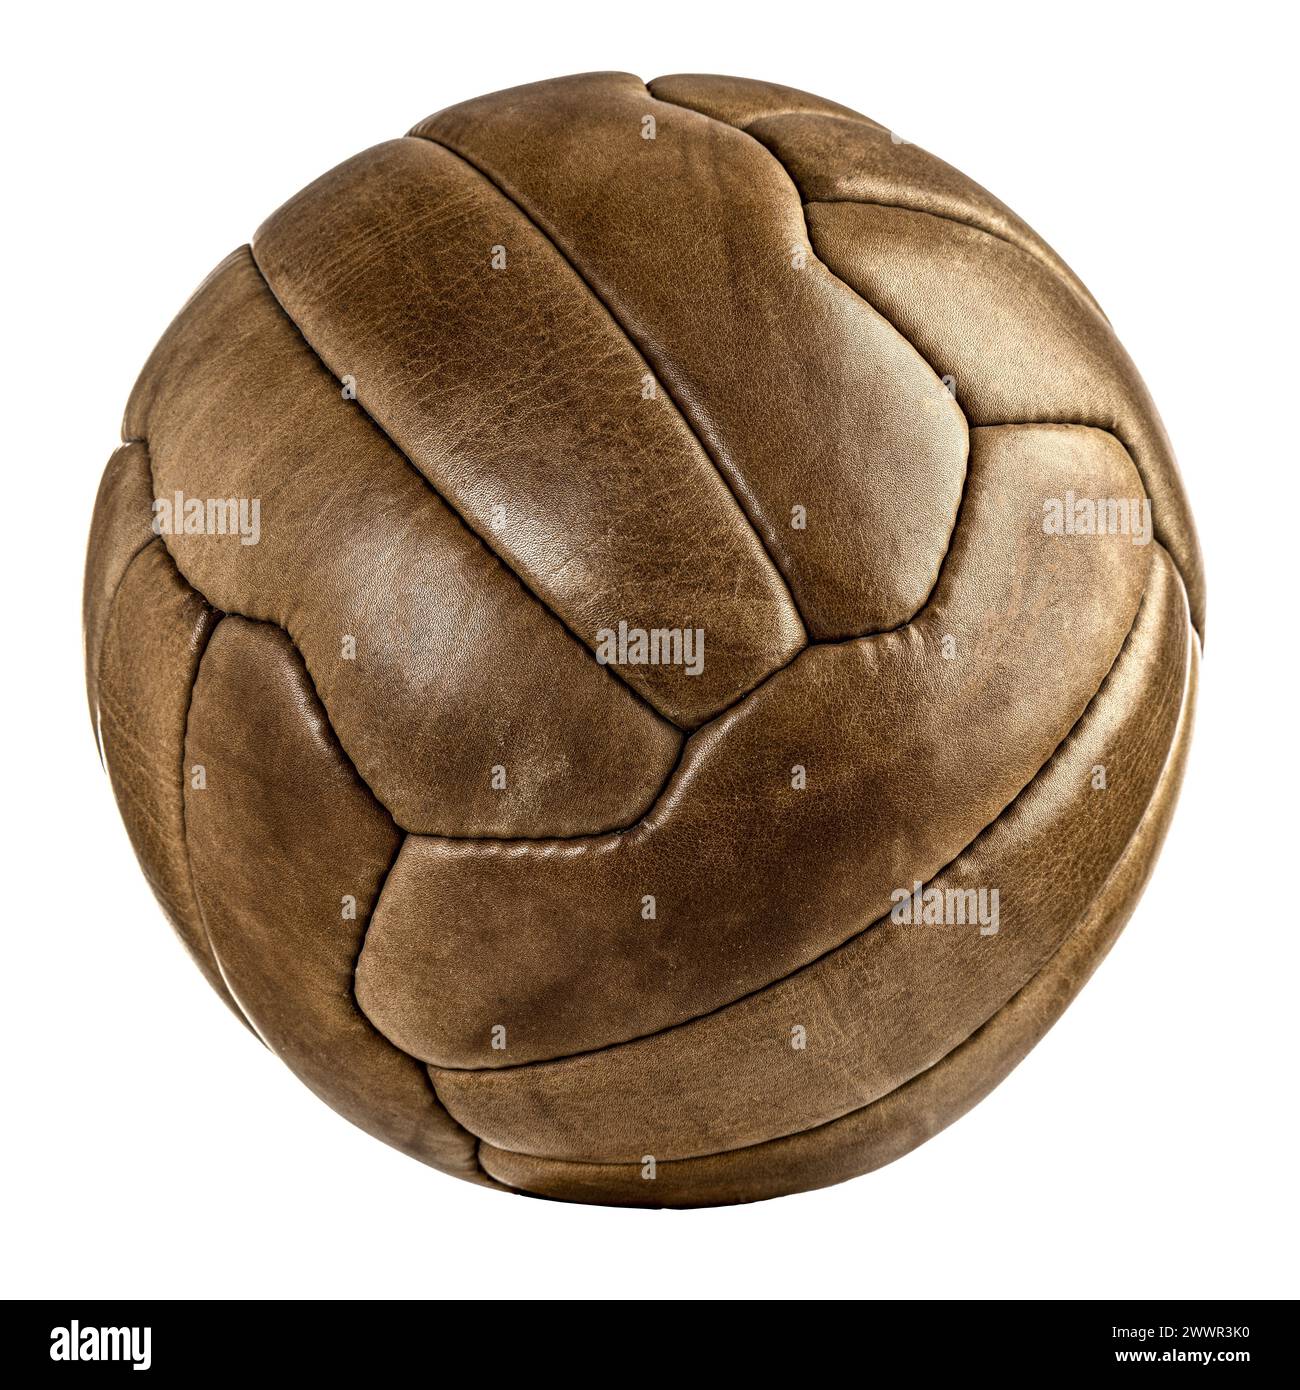 Classico calcio in pelle marrone con agenti atmosferici, isolato su sfondo bianco Foto Stock